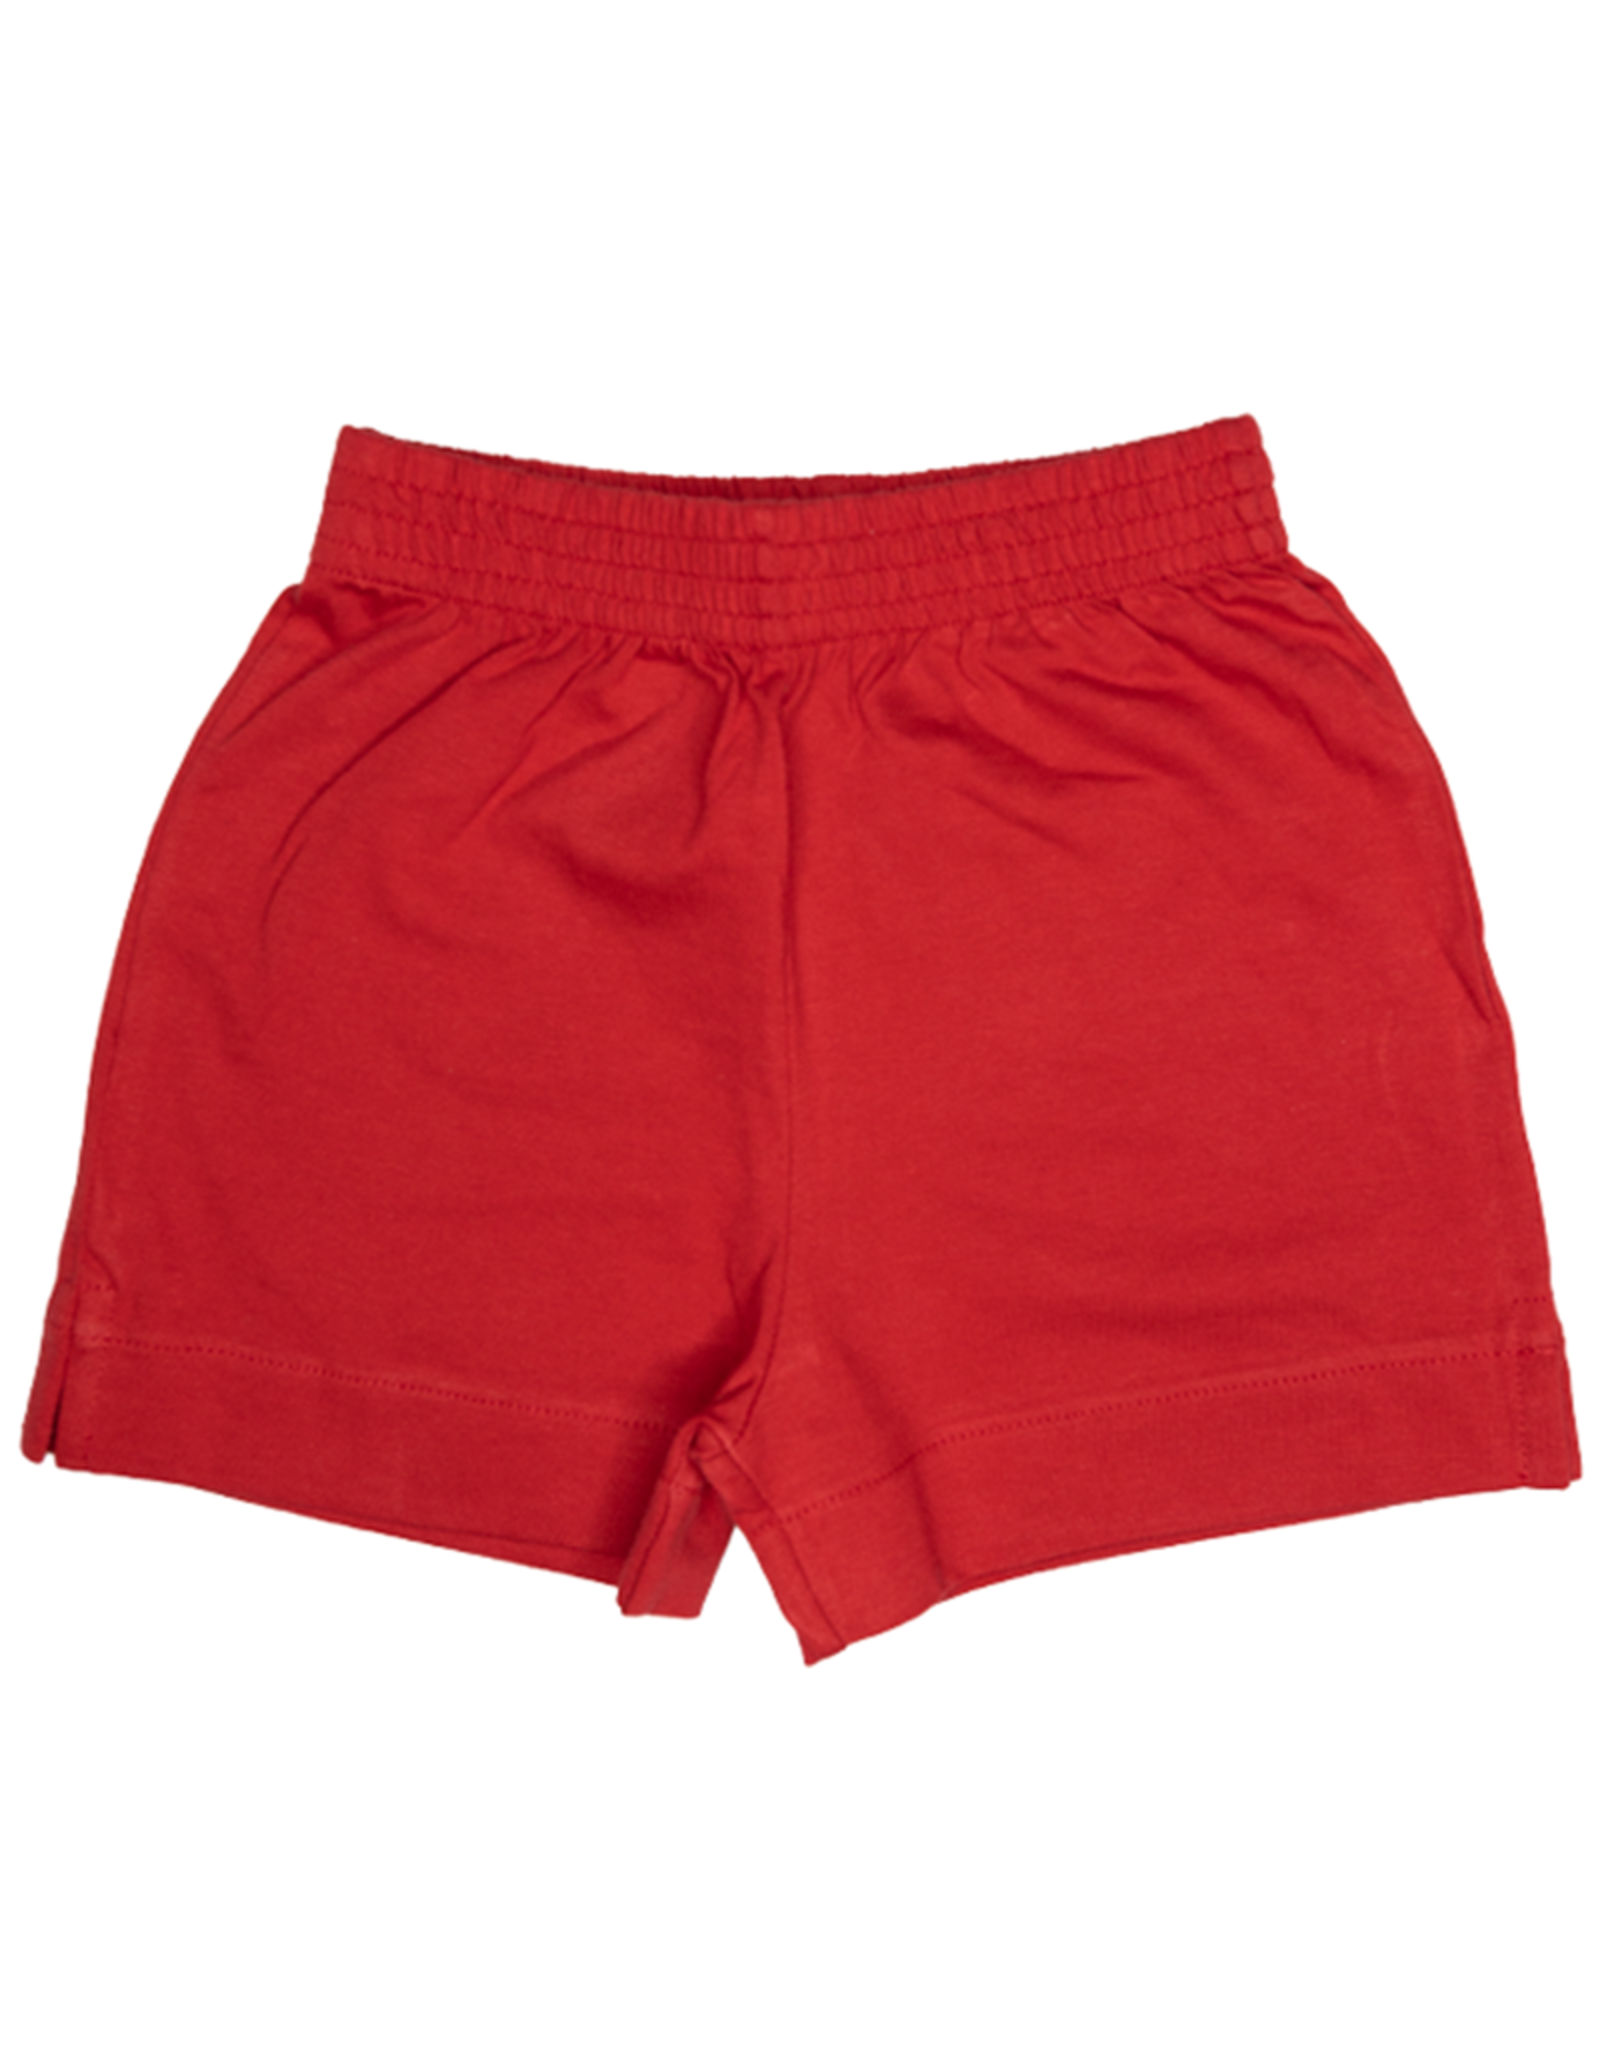 Luigi SH006 Jersey Knit Short Red